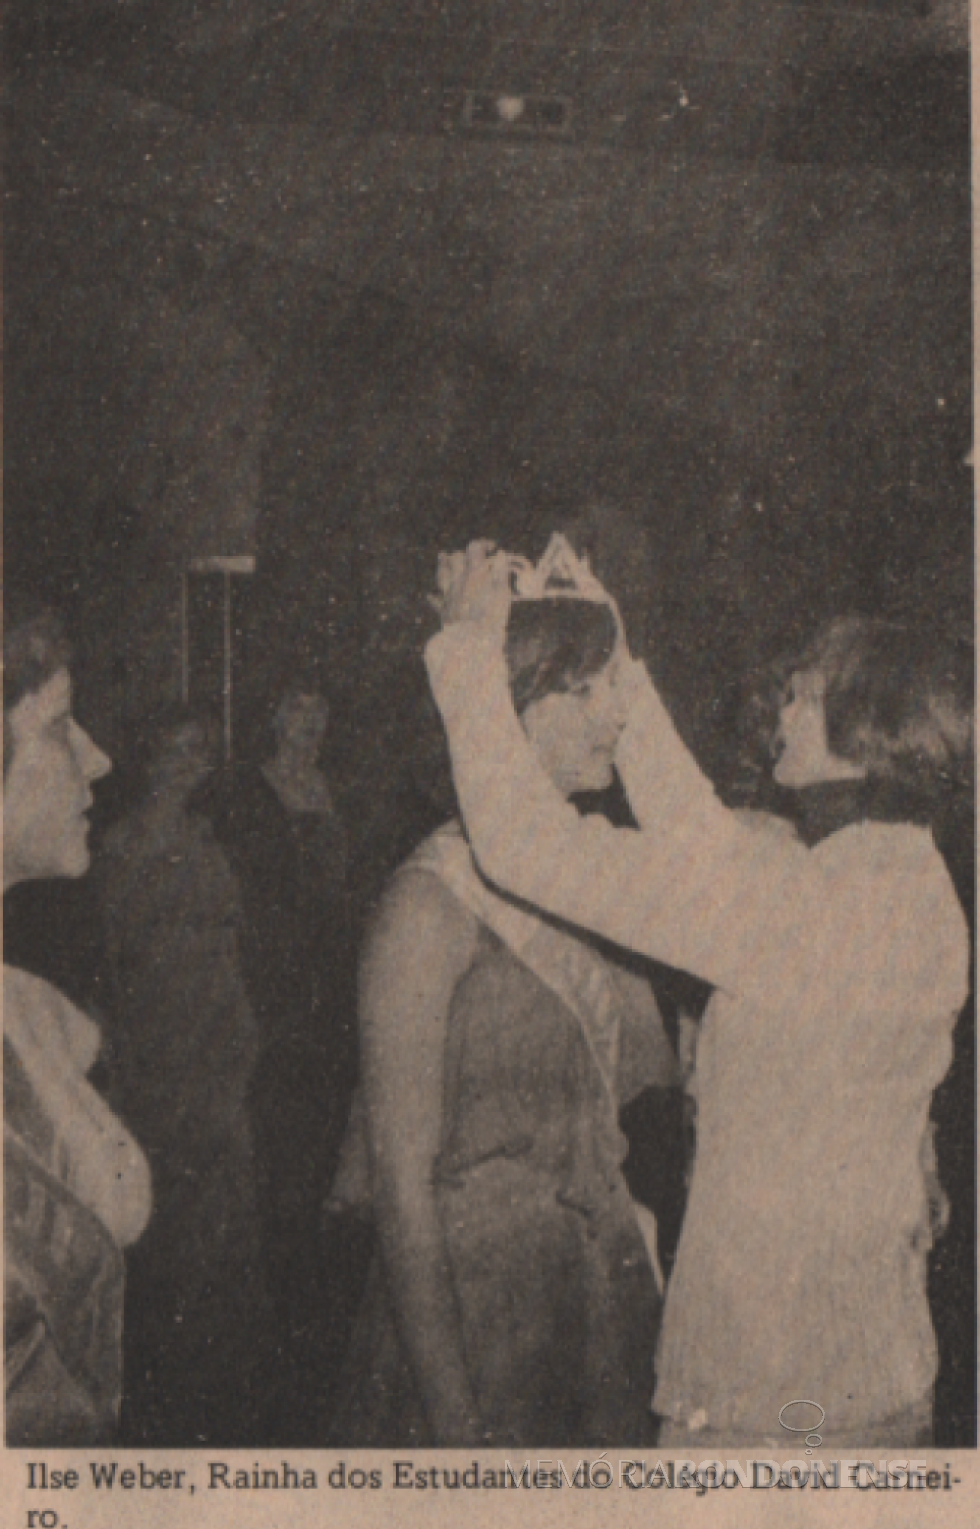 || Ilse Weber coroada Rainha dos Estudante do Colégio Comercial David Carneiro, em junho de 1979.
Imagem: Acervo Projeto Memória Rondonense/Família Ariovaldo Luiz Bier - FOTO 10 - 